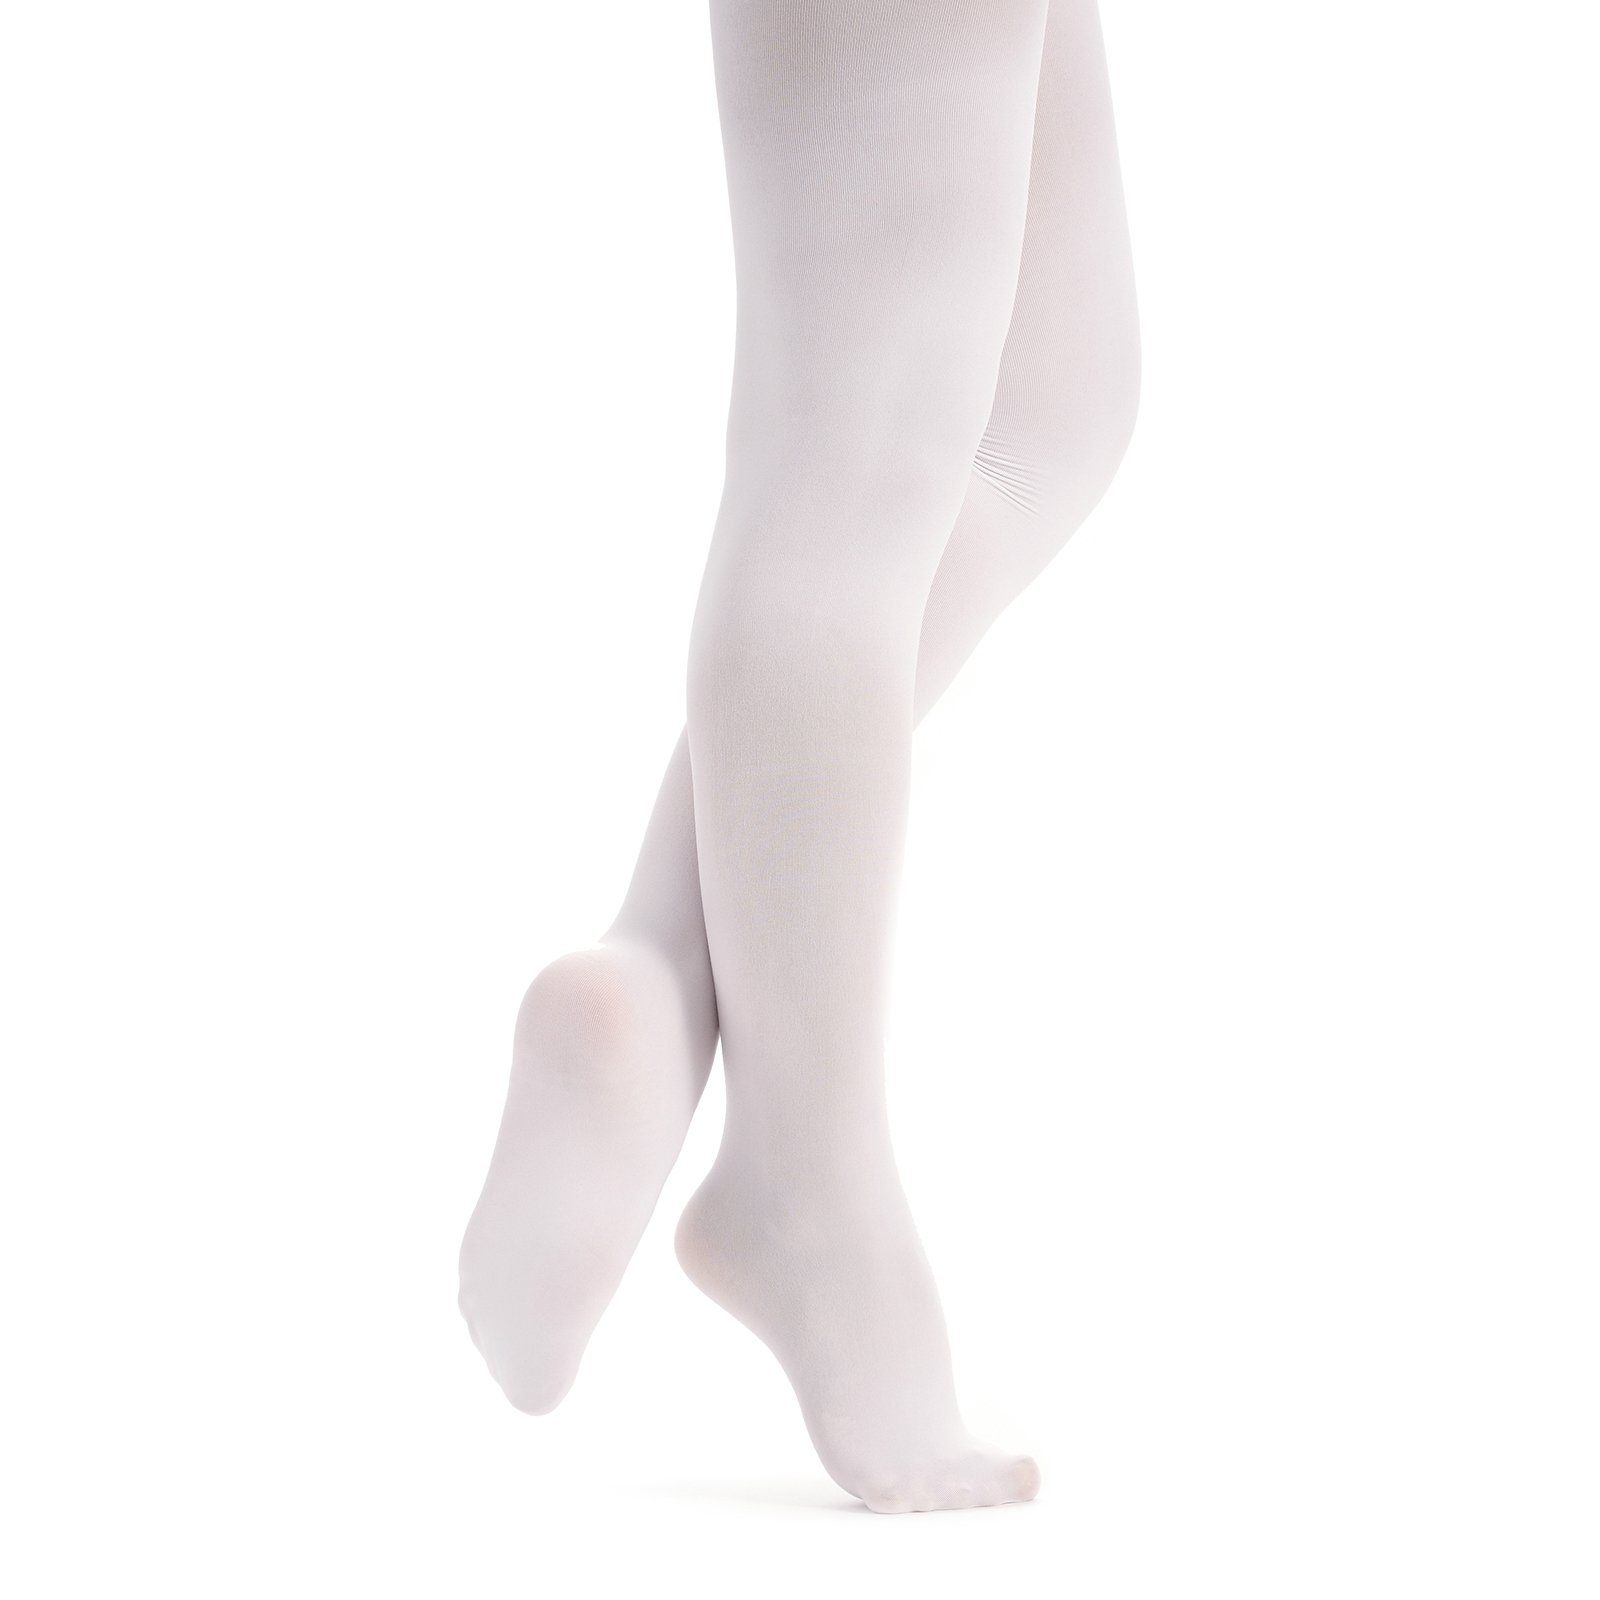 und weich, Damen tanzmuster Kira Fuß weiß Strumpfhose Ballettstrumpfhose strapazierfähig wunderbar mit elastisch